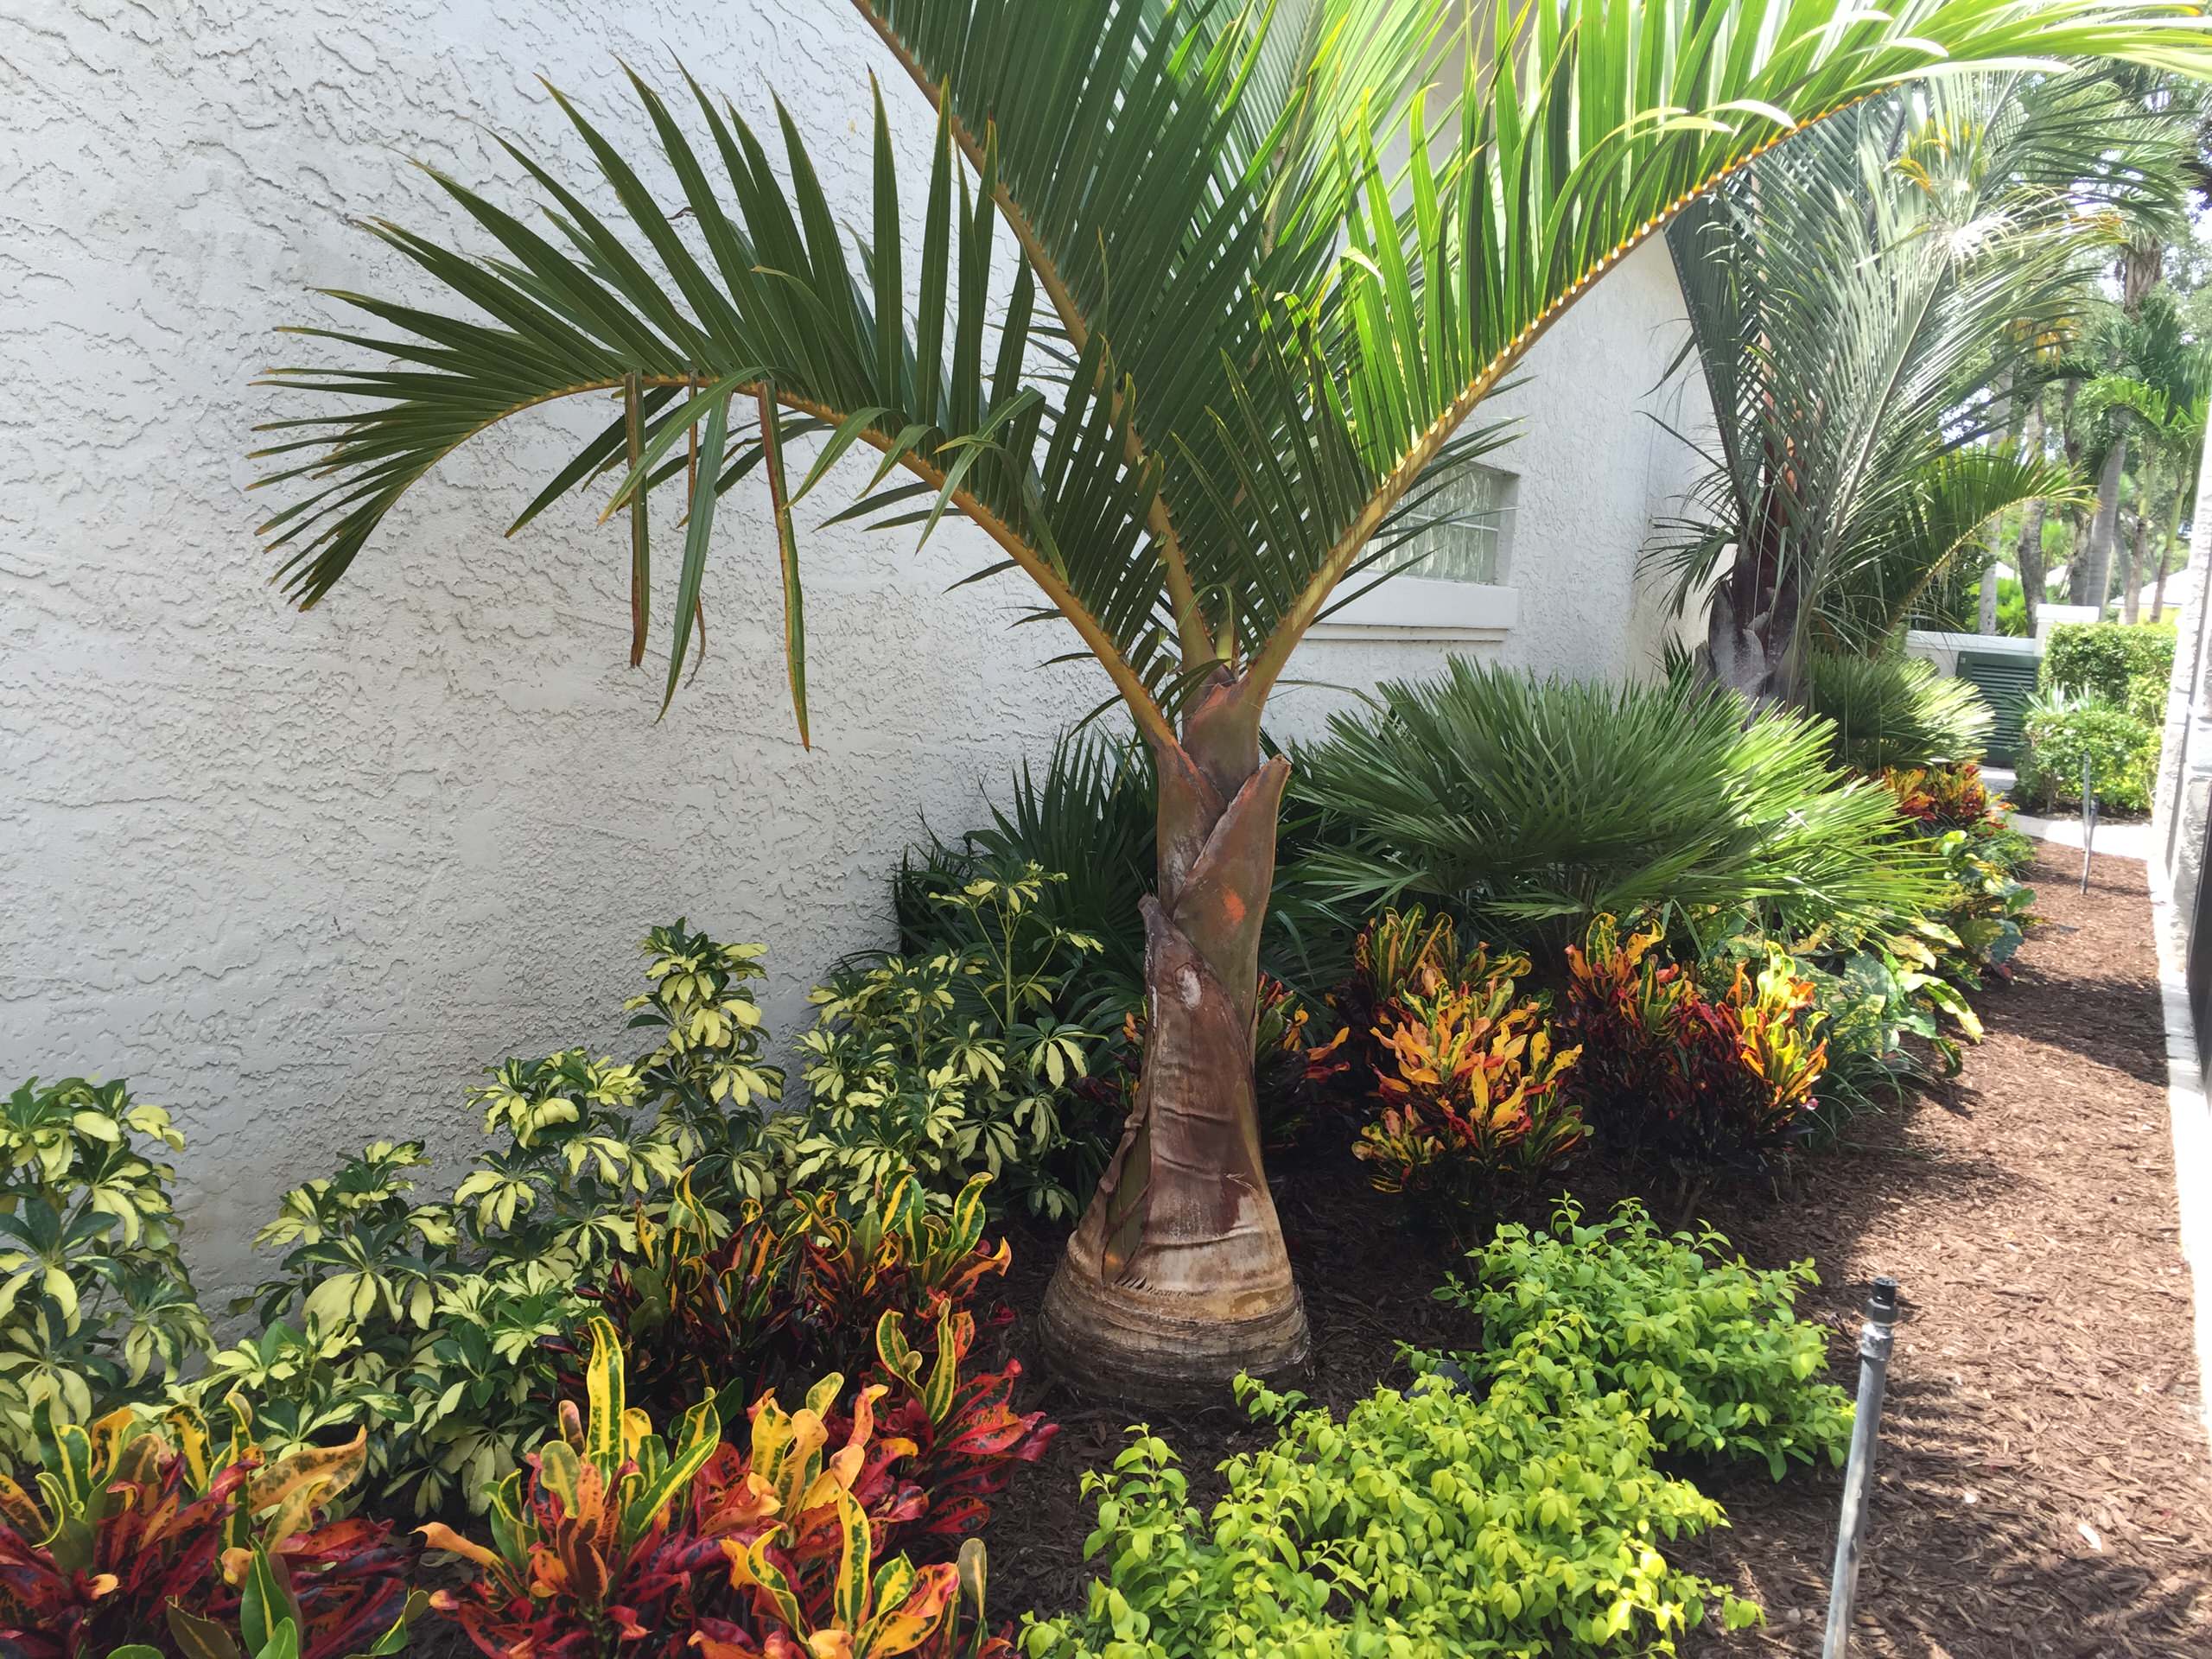 Palm Tree Backyard - Photos & Ideas | Houzz